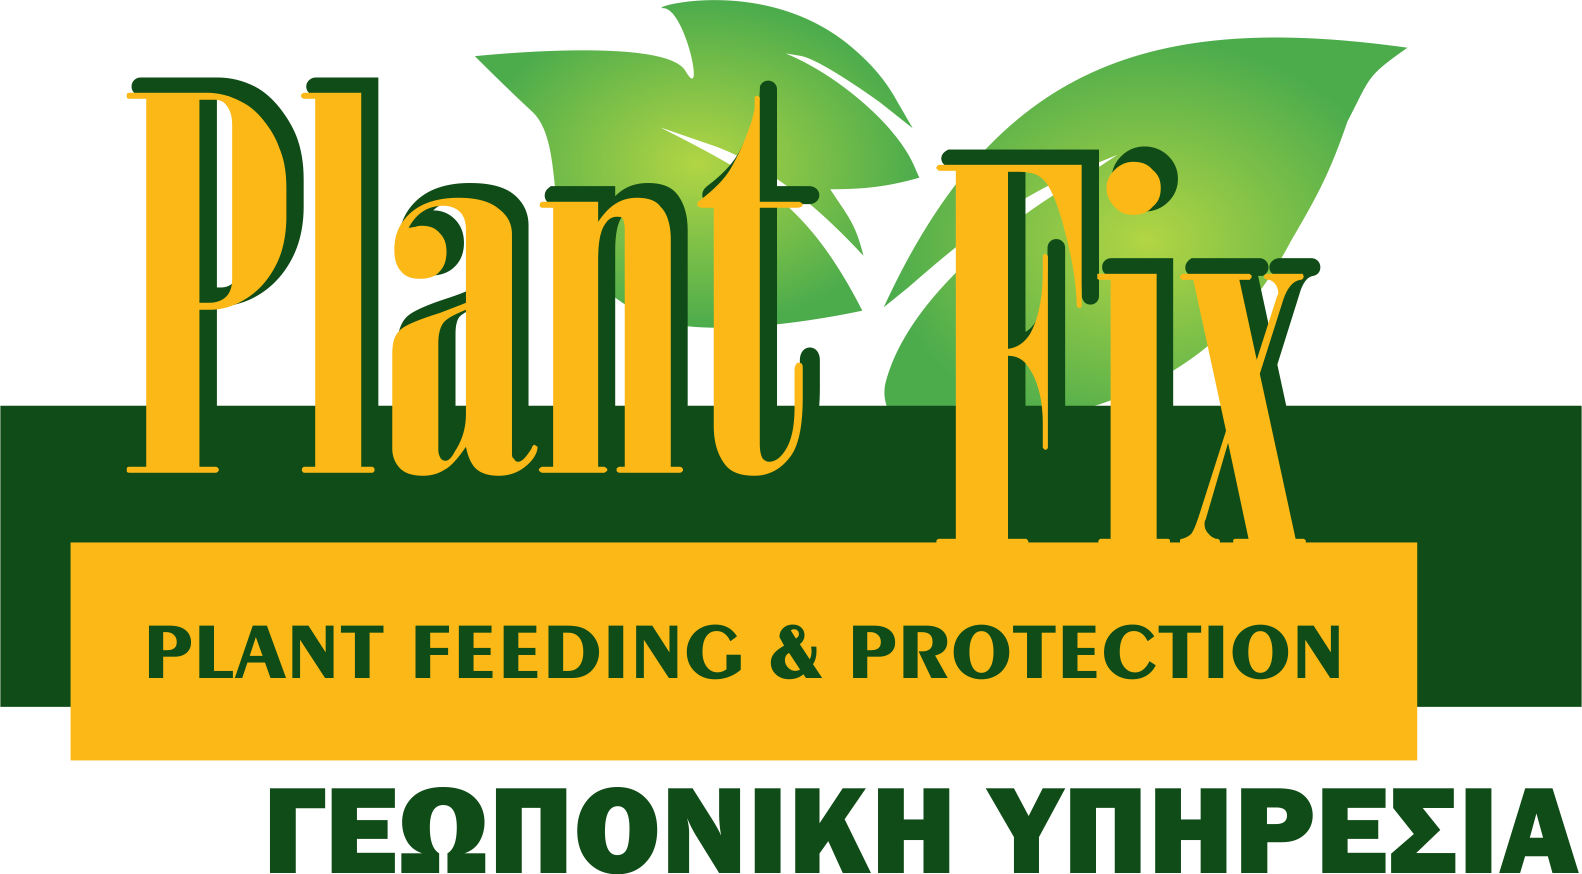 PlantFix Cyprus, Πάφος, Λεμεσός, Λάρνακα, Λευκωσία, Κύπρος, πρωτογενής τομέας κύπρος, παγκύπρια εξυπηρέτηση, γεωπονική υπηρεσία, γεωπονία κύπρος, φυτοφάρμακα κύπρος, συμβουλές προς γεωργούς, συντήρηση κήπων, φυτοπροστασία κύπρος, μυκητοκτόνα, εντομοκτόνα, ζιζανιοκτόνα, ακαρεοκτόνα, ορμόνες, περιποίηση κήπου, συντήρηση φυτών, εσπεριδοειδή, αμπελοκαλλιέργειες, πατατοπαραγωγή, λιπάσματα, θρέψη, κοκκώδη λιπάσματα, κρυσταλλικά λιπάσματα, υγρά λιπάσματα, εδαφοβελτιωτικά, σπόροι καλλιέργεια, θερμοκήπια, δημόσια υγεία, βιολογικά προϊόντα, γεωργικά εφόδια, εργαλεία αγρού, εργαλεία κήπου, ψαλίδια κηπουρού, πριόνια κήπου, μαχαίρια κήπου, εμβολιαστήρια, συντήρηση κήπου, εξαρτήματα άρδευσης, άρδευση χωράφι, παγίδες εντόμων, απωθητικά ζιζανίων, είδη προστασίας δέντρων, είδη συσκευασίας γεωργικών προϊόντων, δίχτυα σκίασης, δίχτυ αναρρίχησης φυτών, αντιχαλαζικά δίχτυα, δίχτυα ελαιοσυλλογής, δίχτυ προστασίας από πουλιά, αντιπαγετικά δίχτυα, εντομόστεγες, δίχτυ περίφραξης, δίχτυα αθλητικών χώρων, χορτοδεσία, σχοινιά, σπάγγοι, είδη κτηνοτροφίας, πετ σοπ, pet shop, φροντίδα σκύλων γάτων, pafos, paphos, limassol, nicosia, larnaca, larnaka, ποτίστρες, ταΐστρες, περιλαίμια σκύλων, κολάνια γάτων, οδηγοί σκύλων, γάντζοι, σκυλλοτροφές, ζωοτροφές, μικροεργαλεία χειρός, αναλώσιμα, εξαρτήματα, γάντια, μάσκες, αλυσίδες, ταινίες, σπρέι, σακούλες, μουσαμάδες, φυτοχώματα, ψεκαστικά, είδη συσκευασίας τροφίμων, συμβουλές προς γεωργούς, συμβουλευτικές υπηρεσίες, έμπειρο προσωπικό, λιανική πώληση, χονδρική πώληση, γεωργικά εφόδια, φυτοφάρμακα, λίπασμα, ασθένειες φύλλων, Barley scald, Rust desease, κορυφοξήρα, ασθένειες δέντρων καρπών, μάσκα ψεκασμού, Αλτεναρίωση, Βερτισιλλίωση, Περονόσπορος, Pythium spp, Φυτοφθόρα, Ριζοκτόνια, Φελλώδης σηψιρριζία, Σκληροτινίαση, Σκληροτίαση, Αδρομυκώσεις, Αλτερναρίωση, Βοτρύτης, Ωΐδιο, Κλαδοσπορίωση, Βακτηριακό έλκος, Βακτηριακή στιγμάτωση, Βακτηριακή κηλίδωση, Βακτηριακή μάρανση, Νέκρωση εντεριώνης, Ιός του κίτρινου καρουλίασματος των φύλλων της τομάτας, Ιός του κηλιδωτού μαρασμού της ντομάτας, Ιός του θαμνώδους νανισμού της ντομάτας, Ιός του μωσαϊκού του καπνού, Ιός του μωσαϊκού της αγγουριάς, Ιός του μωσαϊκού της ντομάτας, Ιός του ίκτερου των νεύρων της ντομάτας, Ιός Υ της πατάτας, Δάκος (Dacus oleae), Πυρηνοτρύτης (Prays oleae), Ρυγχίτης (Rhynchites cribripennis), μυκητολογικές, κυκλοκόνιο, ανθράκωση, φυτόφθορα, ψευδόκοκκος, φυλλοκνίστης, ζιζάνια, Περονόσπορος, Ωΐδιο αμπέλου, Ίσκα, Φώμοψη, Νέκρωση βραχιόνων αμπέλου, Σηψιρριζίες αμπέλου, Αδρομύκωση αμπέλου, Διάφορες μυκητολογικές ασθένειες αμπέλου, Τεφρά σήψη αμπέλου, Μυκητολογικές ασθένειες, Ιολογικές ασθένειες αμπέλου, Μολυσματικός εκφυλισμός αμπέλου, Καρούλιασμα των φύλλων αμπέλου, Βοθρίωση του ξύλου της αμπέλου, Στίξη της αμπέλου, Νέκρωση των νεύρων της αμπέλου, Γλωσσίδια ή εκφύσεις της αμπέλου, Τροφοπενίες, Ανθόπτωση - Μειωμένη καρπόδεση - Ανισορραγία, Ζημιές από χαμηλές και υψηλές θερμοκρασίες, Τοξικότητες, Ξήρανση της ραχέως των βότρυων, Προκαρυωτικές ασθένειες αμπέλου, Βακτηριακή νέκρωση, Καρκίνος, Ίκτερος, Ασθένεια Pierce, Σκληρωτινίαση, ∆ακτυλιωτή σήψη, Καστανή σήψη, Μελάνωση λαιµού, Καρούλιασμα φύλλων, Ράβδωση πατάτας, Μωσαϊκό, Κοίλη καρδιά, Ρήξη κονδύλων, Κονδυλοποίηση φύτρων, Ηλιακά εγκαύματα, Πρασίνισμα κονδύλων, Ζημιές από ψύξη κονδύλων, φυτοπροστασία χωρίς χημικά φυτοφάρμακα, βιοδυναμικα σκευασματα, βιοδυναμική καλλιέργεια, φυτοπροστασία ελιάς αμπελιού ροδιάς πατάτας, βιολογικές καλλιέργειες επιδοτήσεις, ανάπτυξη βιολογικής γεωργίας, εξυπηρέτηση σε όλες τις πόλεις, άρτια εκπαιδευμένοι γεωπόνοι, προϊόντα θρέψης, επαγγελματίες γεωργοί, ερασιτέχνης παραγωγός, ποιοτικά σκευάσματα, φυτοπαθολογικά προβλήματα, στολές εργασίας.